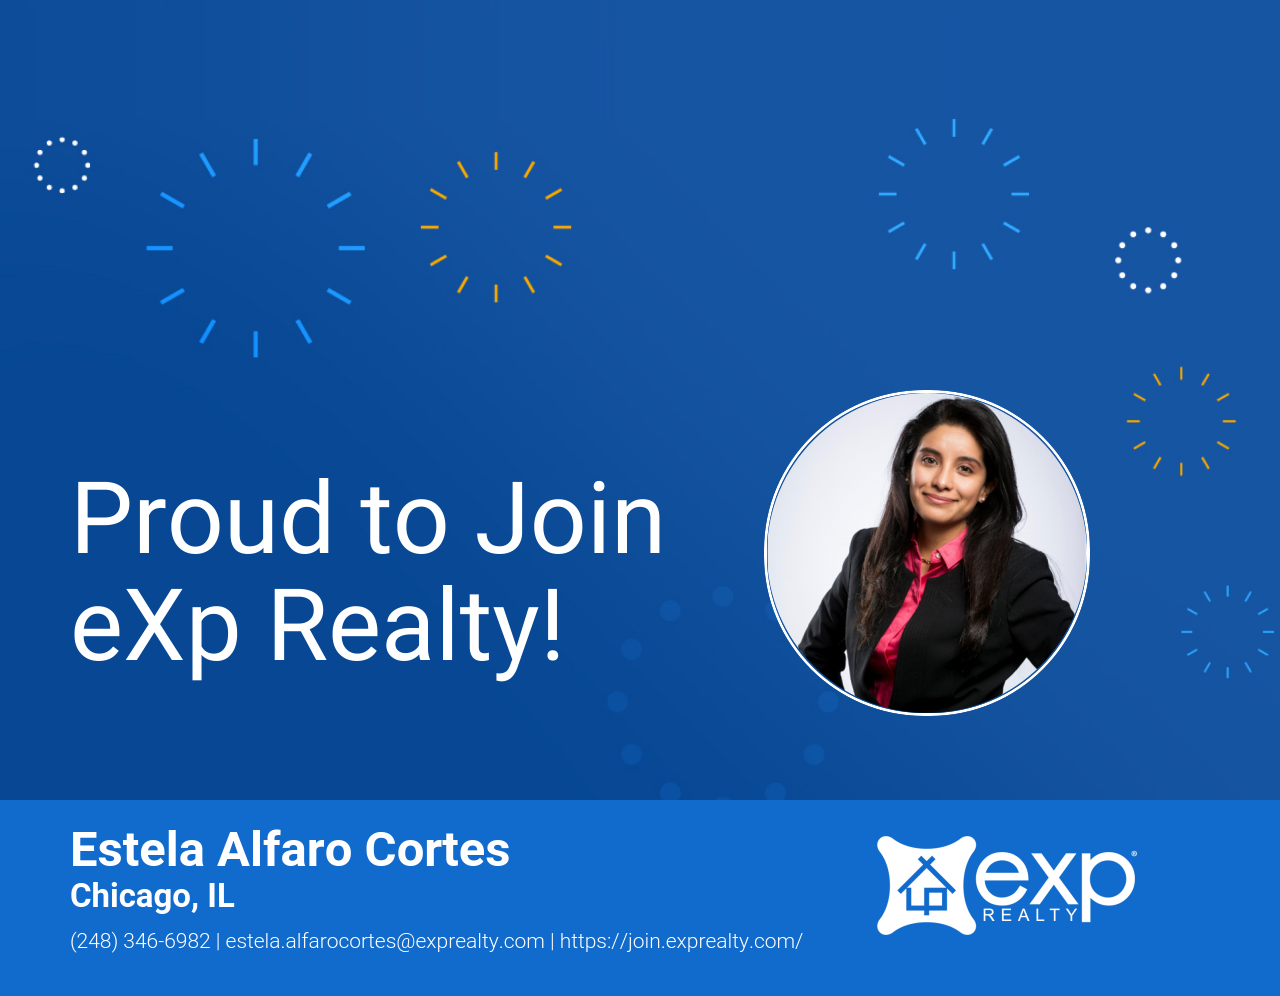 eXp Realty Welcomes Estela Alfaro Cortes!